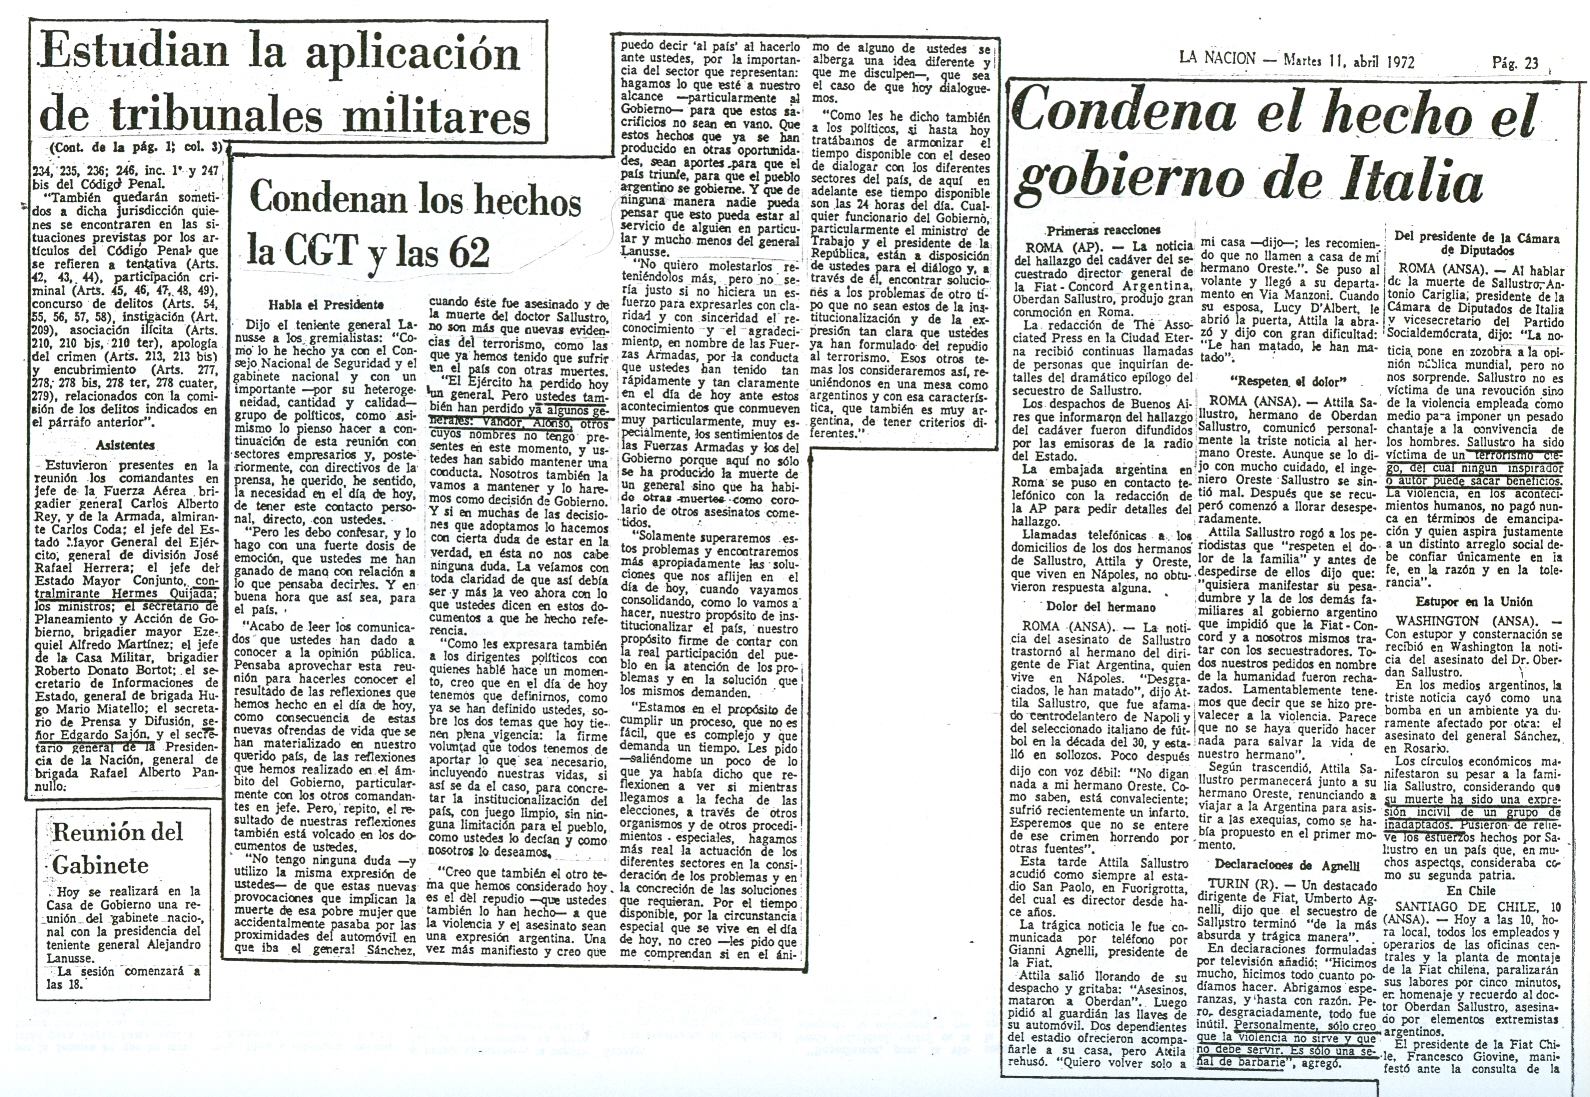 [1972-11-04+La+Nacion+-+Asesinatos+de+gral+Sanchez+y+Dr+Oberdan+Sallustro+20.jpg]